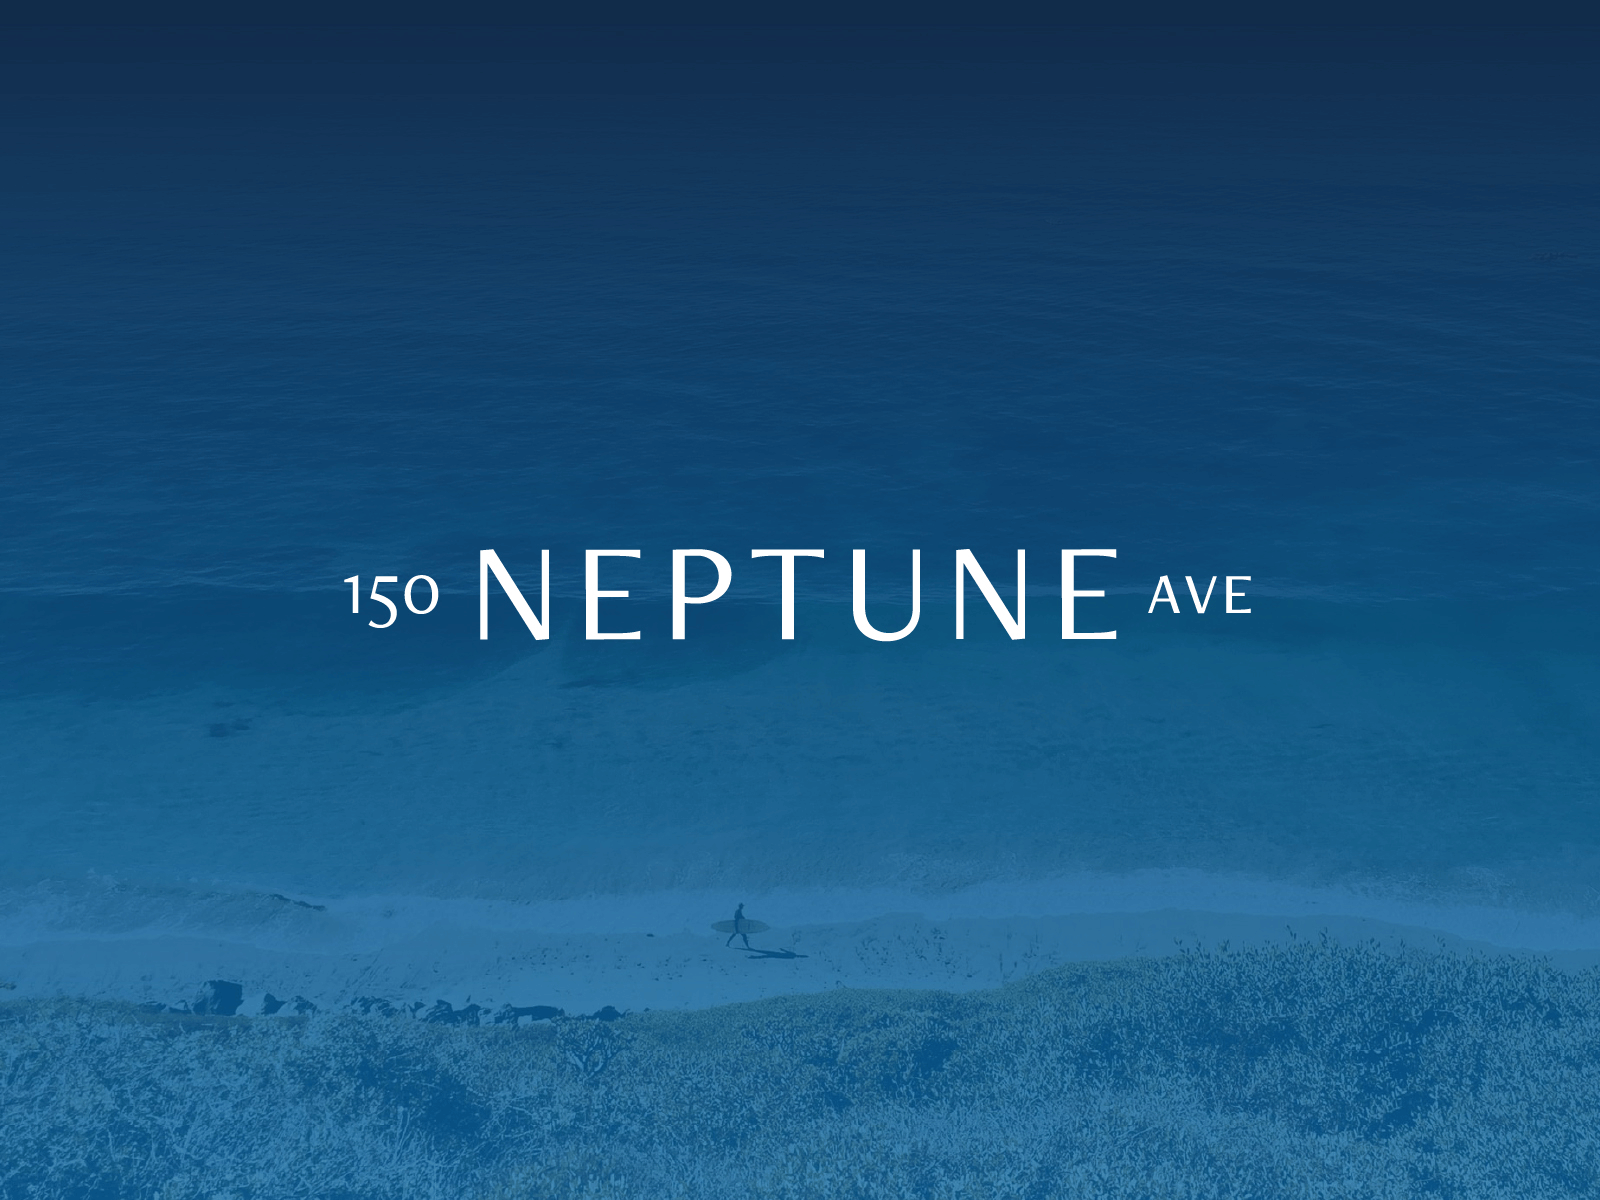 150 Neptune